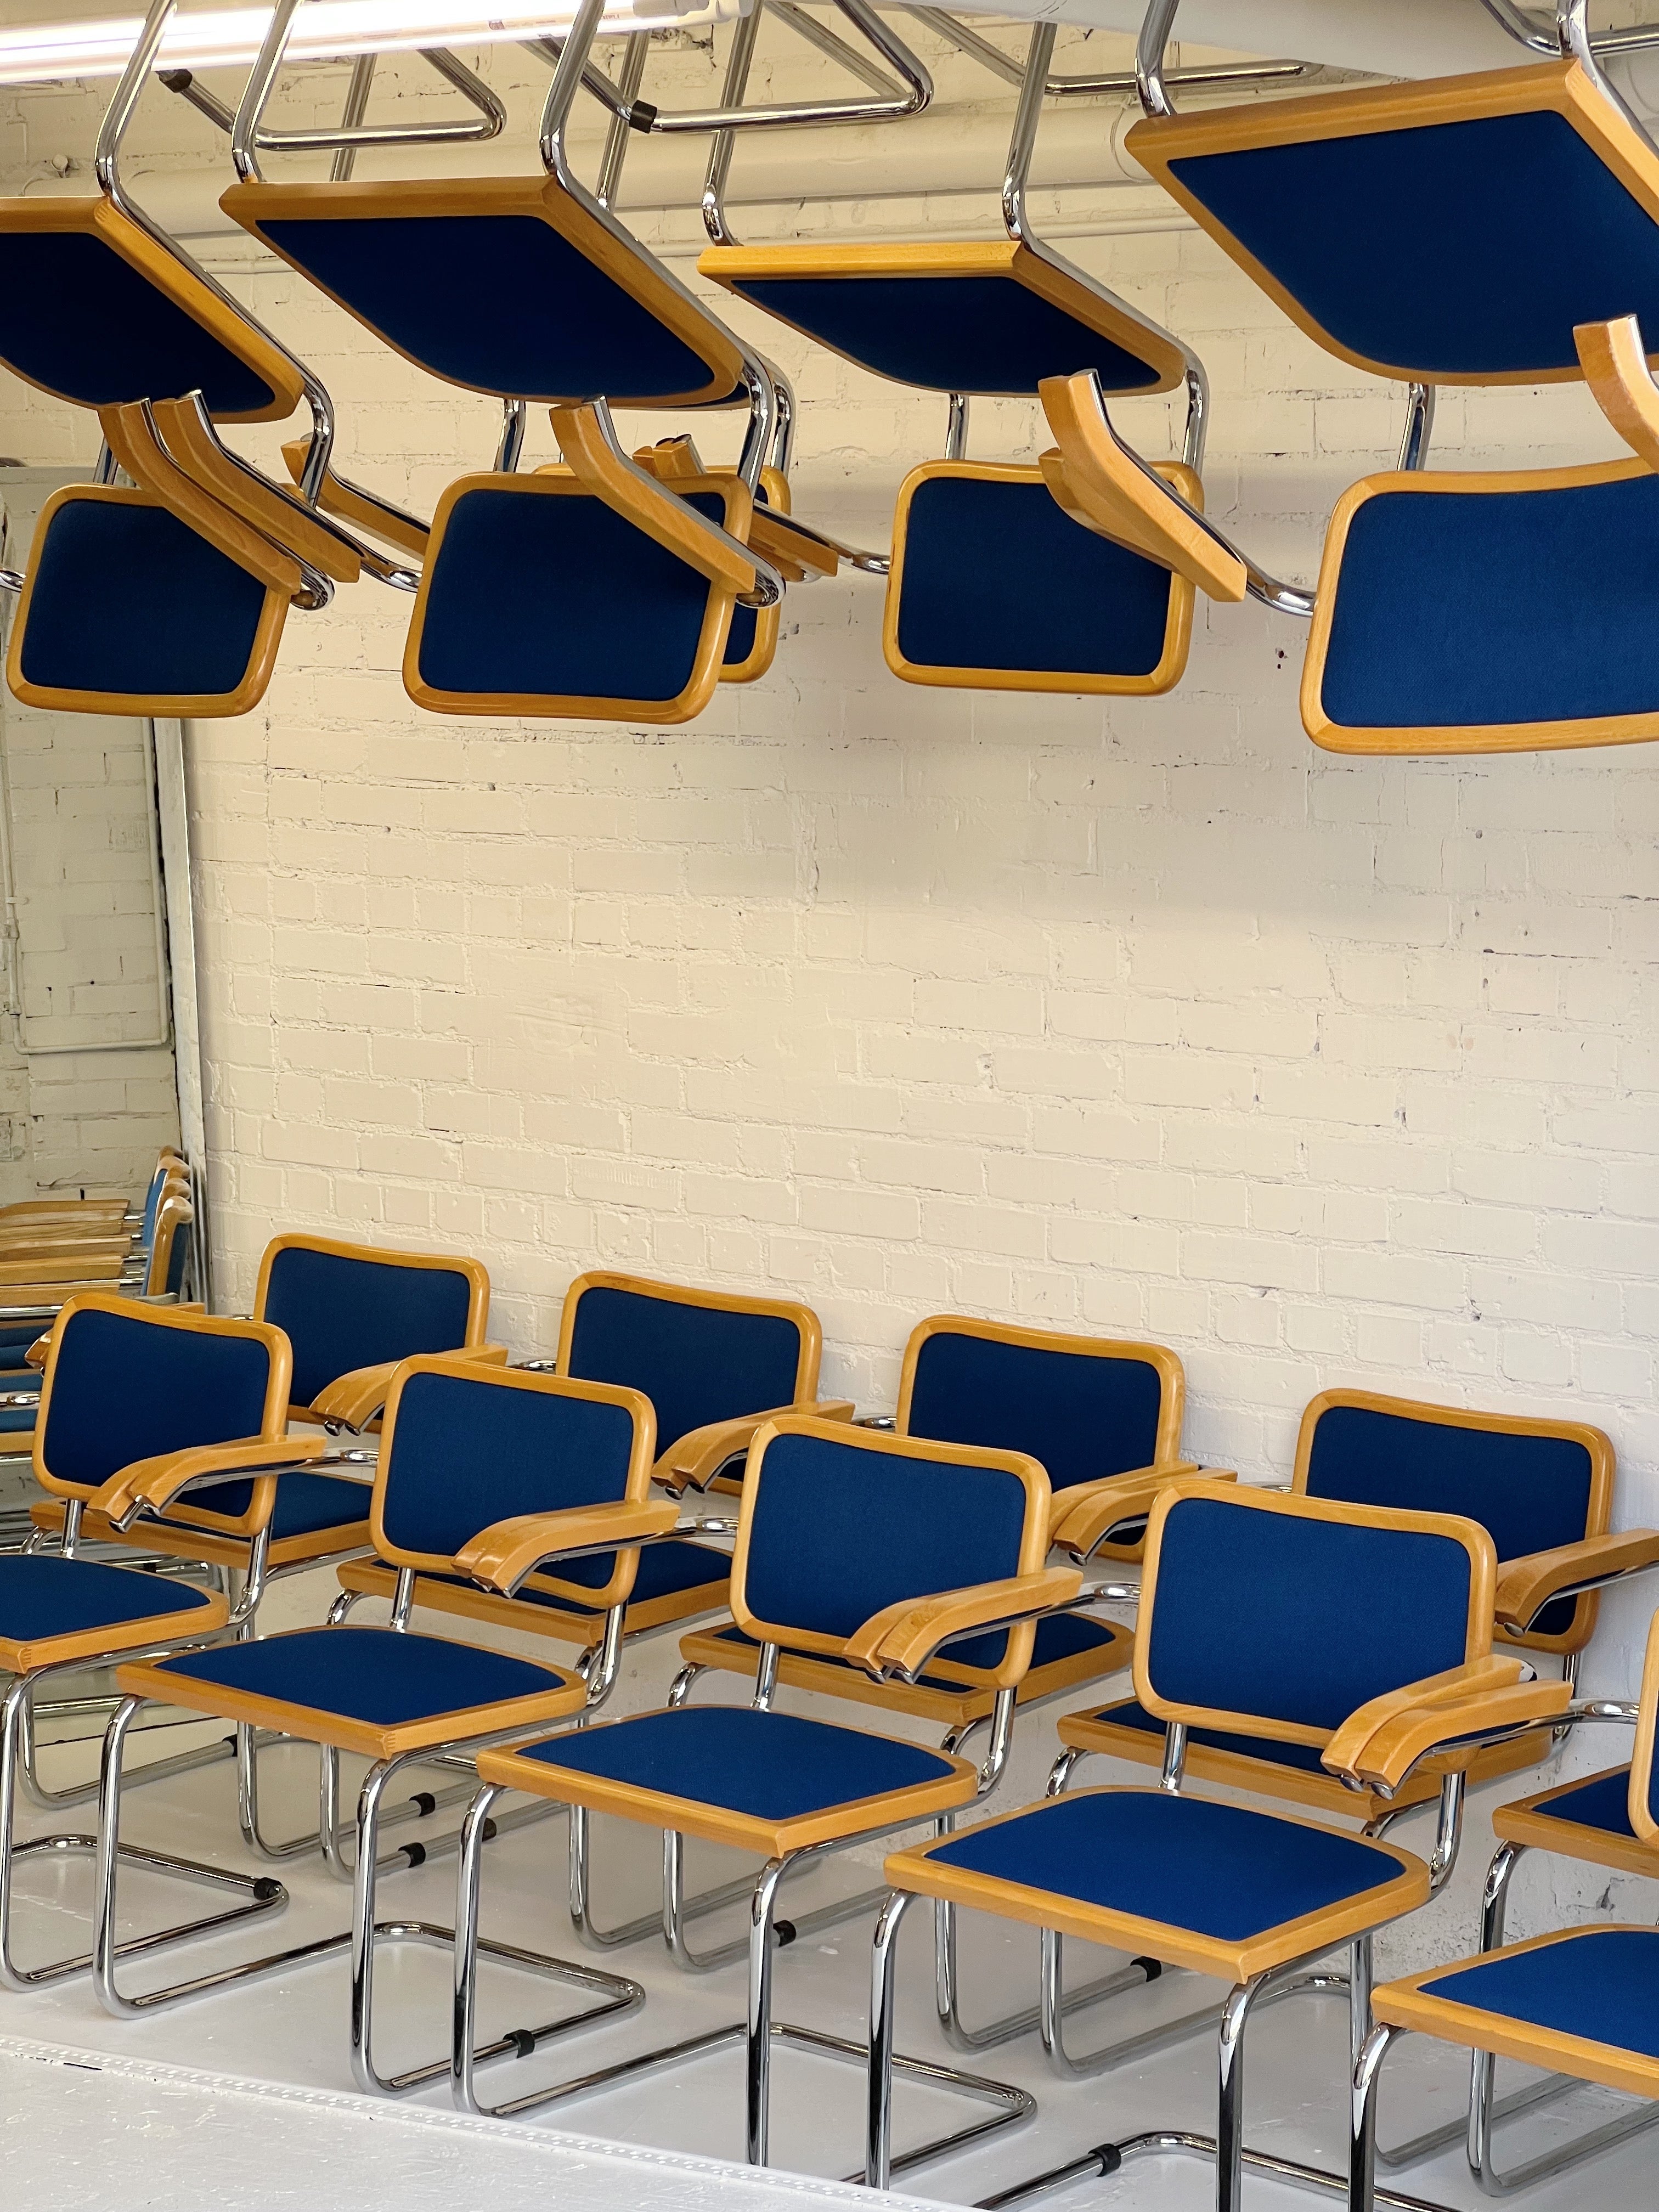 Esstischstühle im Cecsa-Stil aus den 1980er Jahren von Loewenstein. Seltene kobaltblaue Polsterung mit verchromten Rahmen, oberen Holzverkleidungen und Armlehnen. 30 Stück verfügbar. Alle haben Armlehnen.

Diese wurden in den Jahren 1983-1985